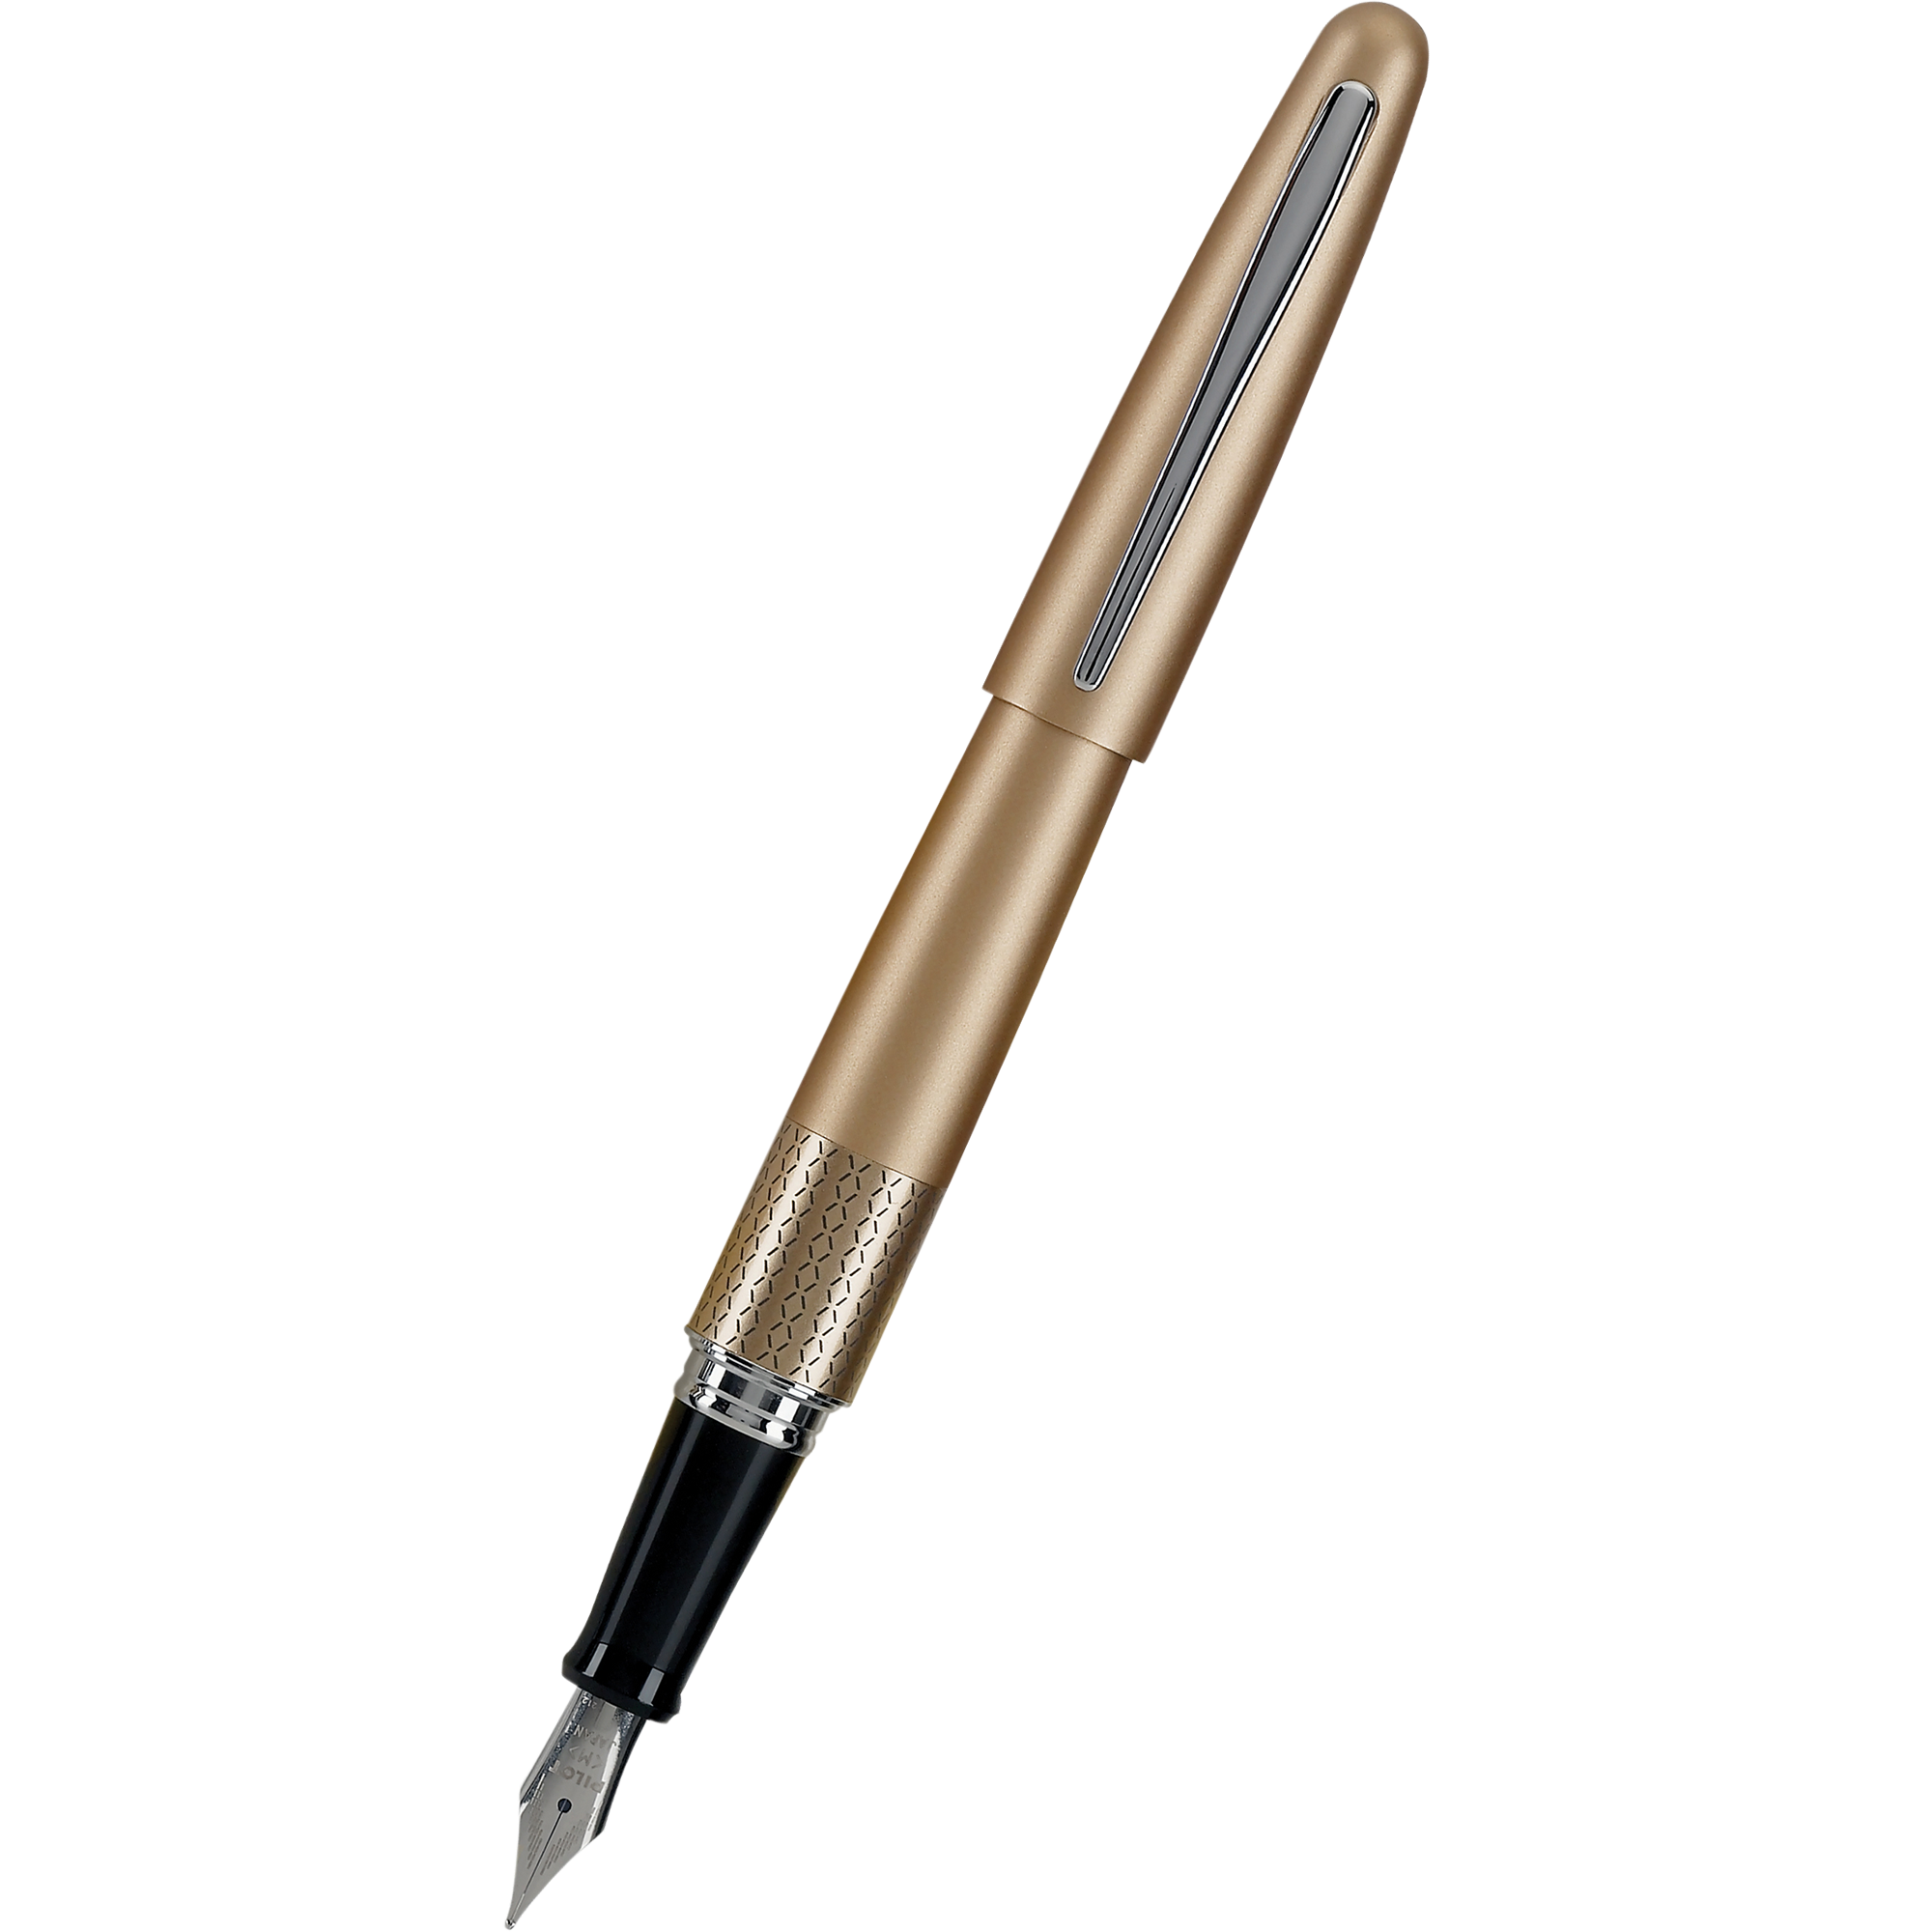 Pilot Fountain Pen - MR Collection - Gold Zig Zag - Medium-Pen Boutique Ltd